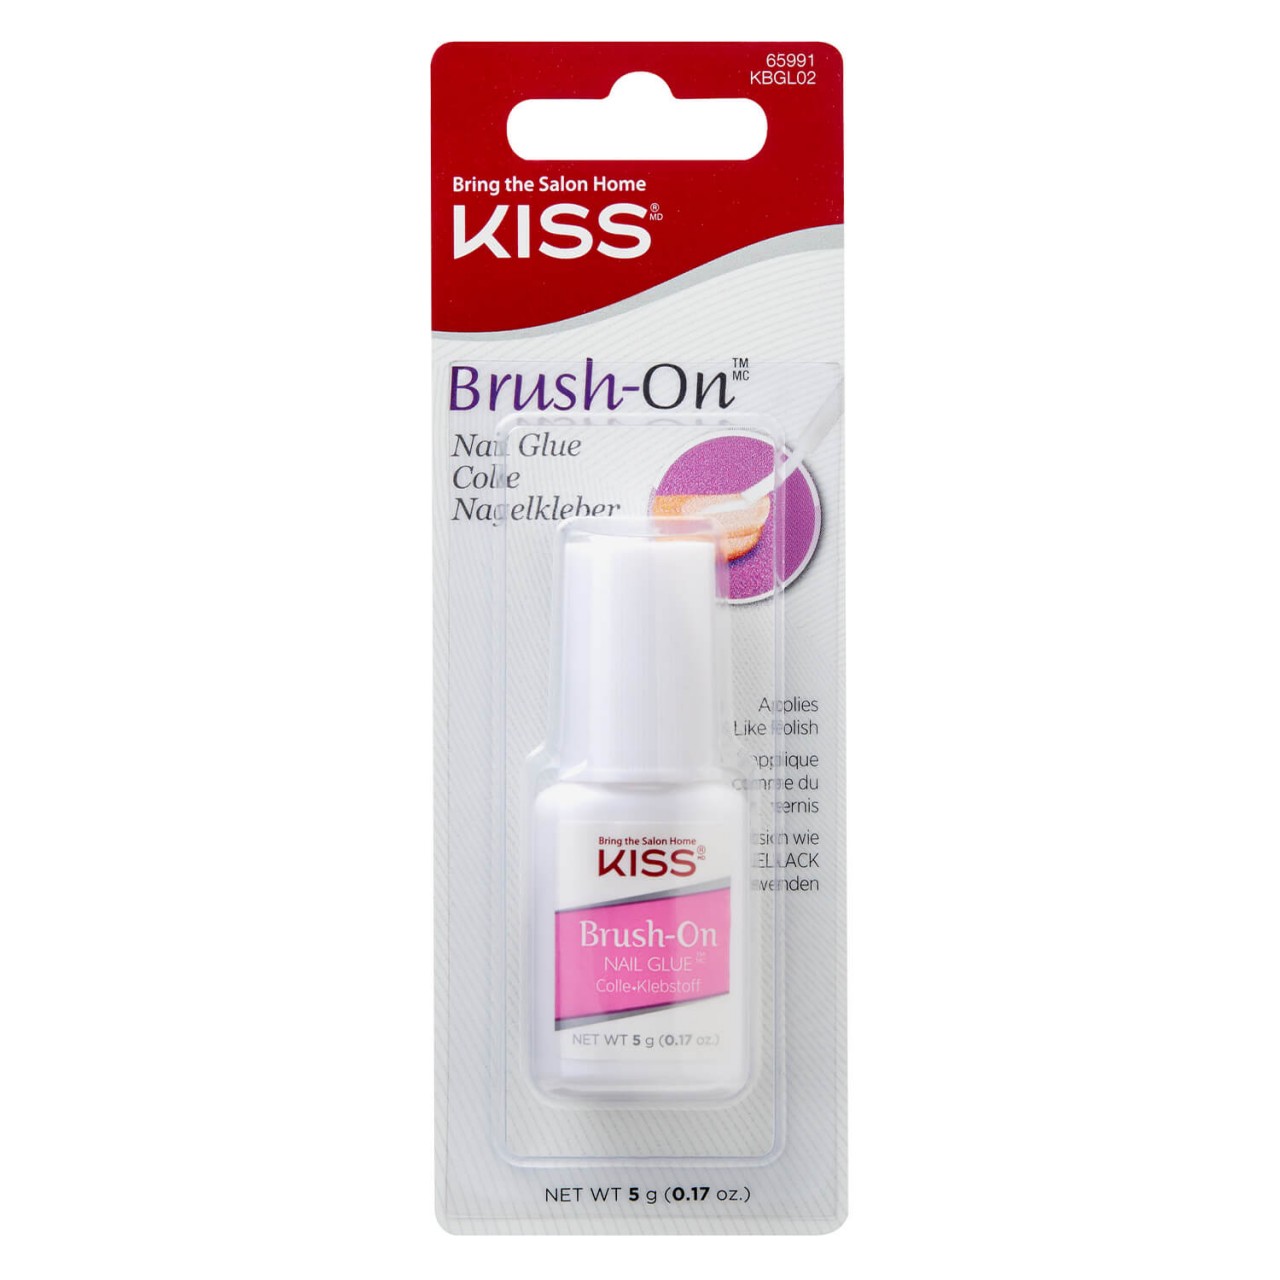 KISS Nails - Brush-On Nail Glue von KISS